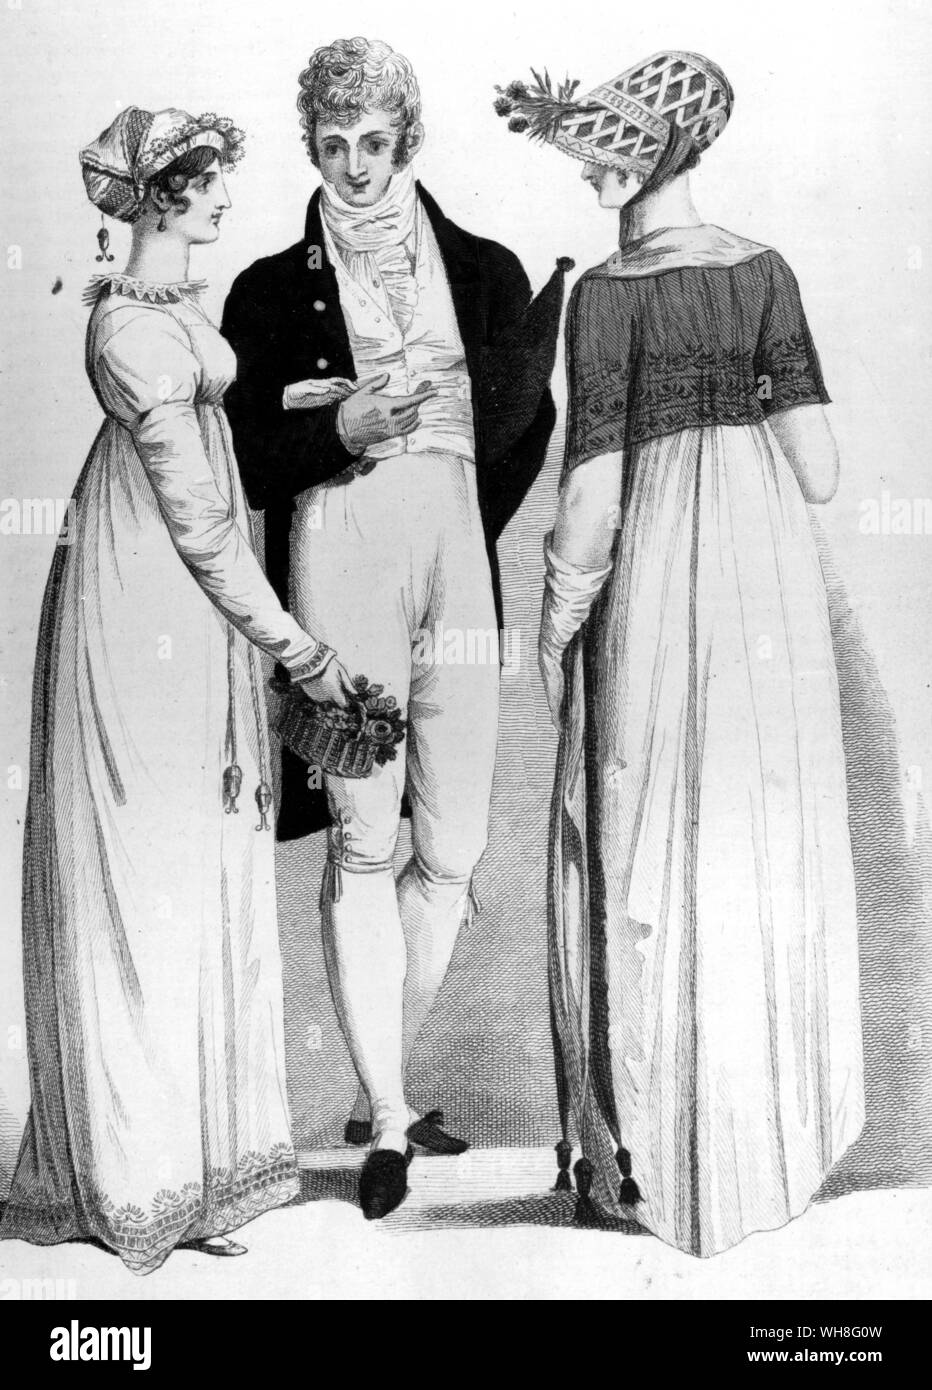 El traje de noche del siglo XVIII período. Jane Austen (1775-1817), un destacado novelista inglés. Un retrato de Jane Austen por David Cecil. Foto de stock